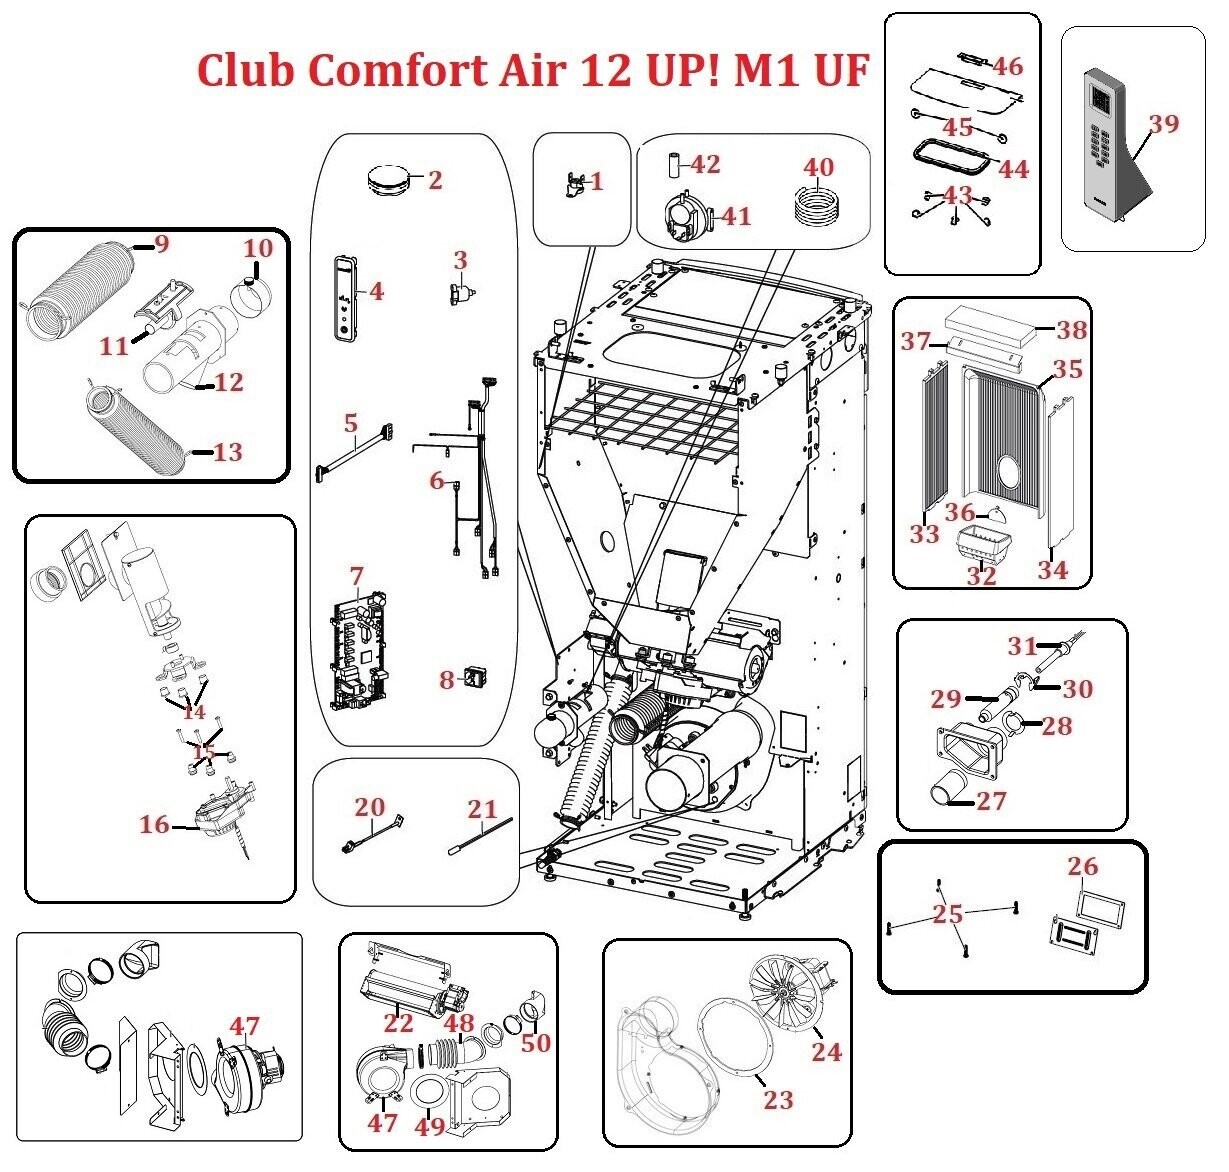 Club Comfort Air 12 UP! M1 UF